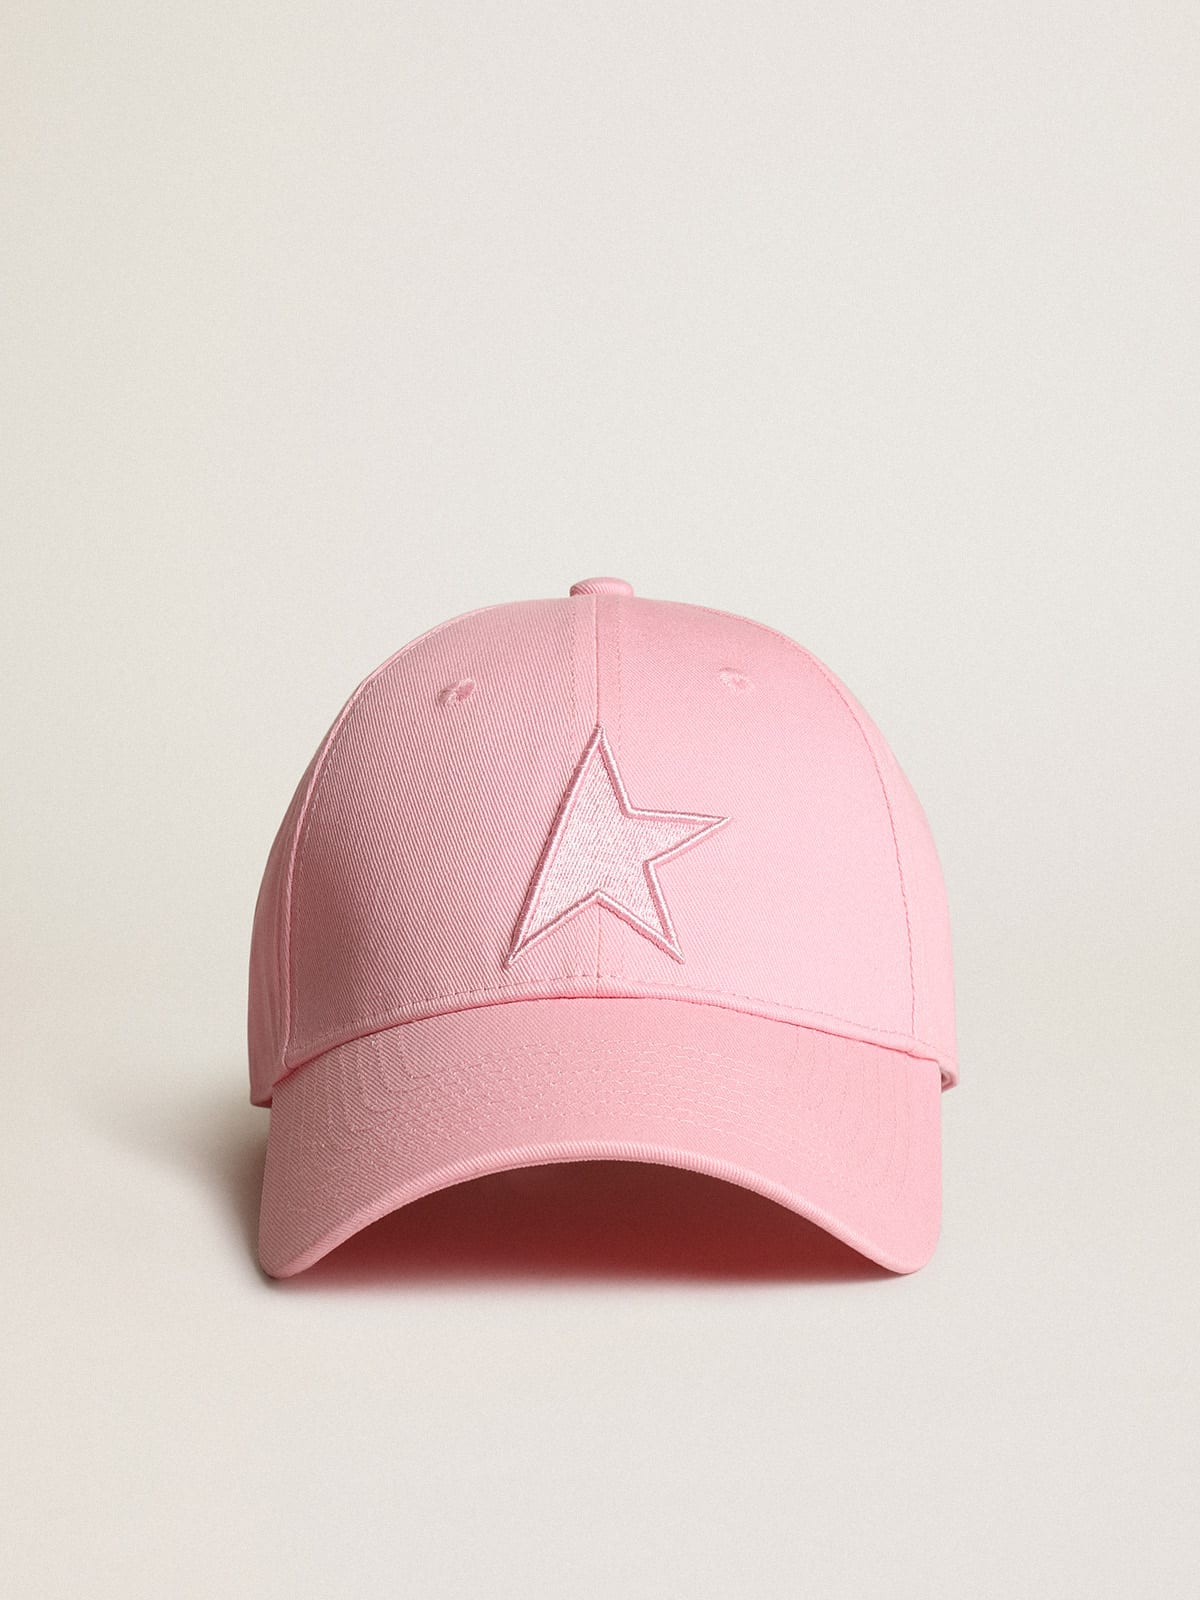 Golden Goose - Cappellino da baseball Demos Collezione Star di colore rosa con stella ton sur ton in 